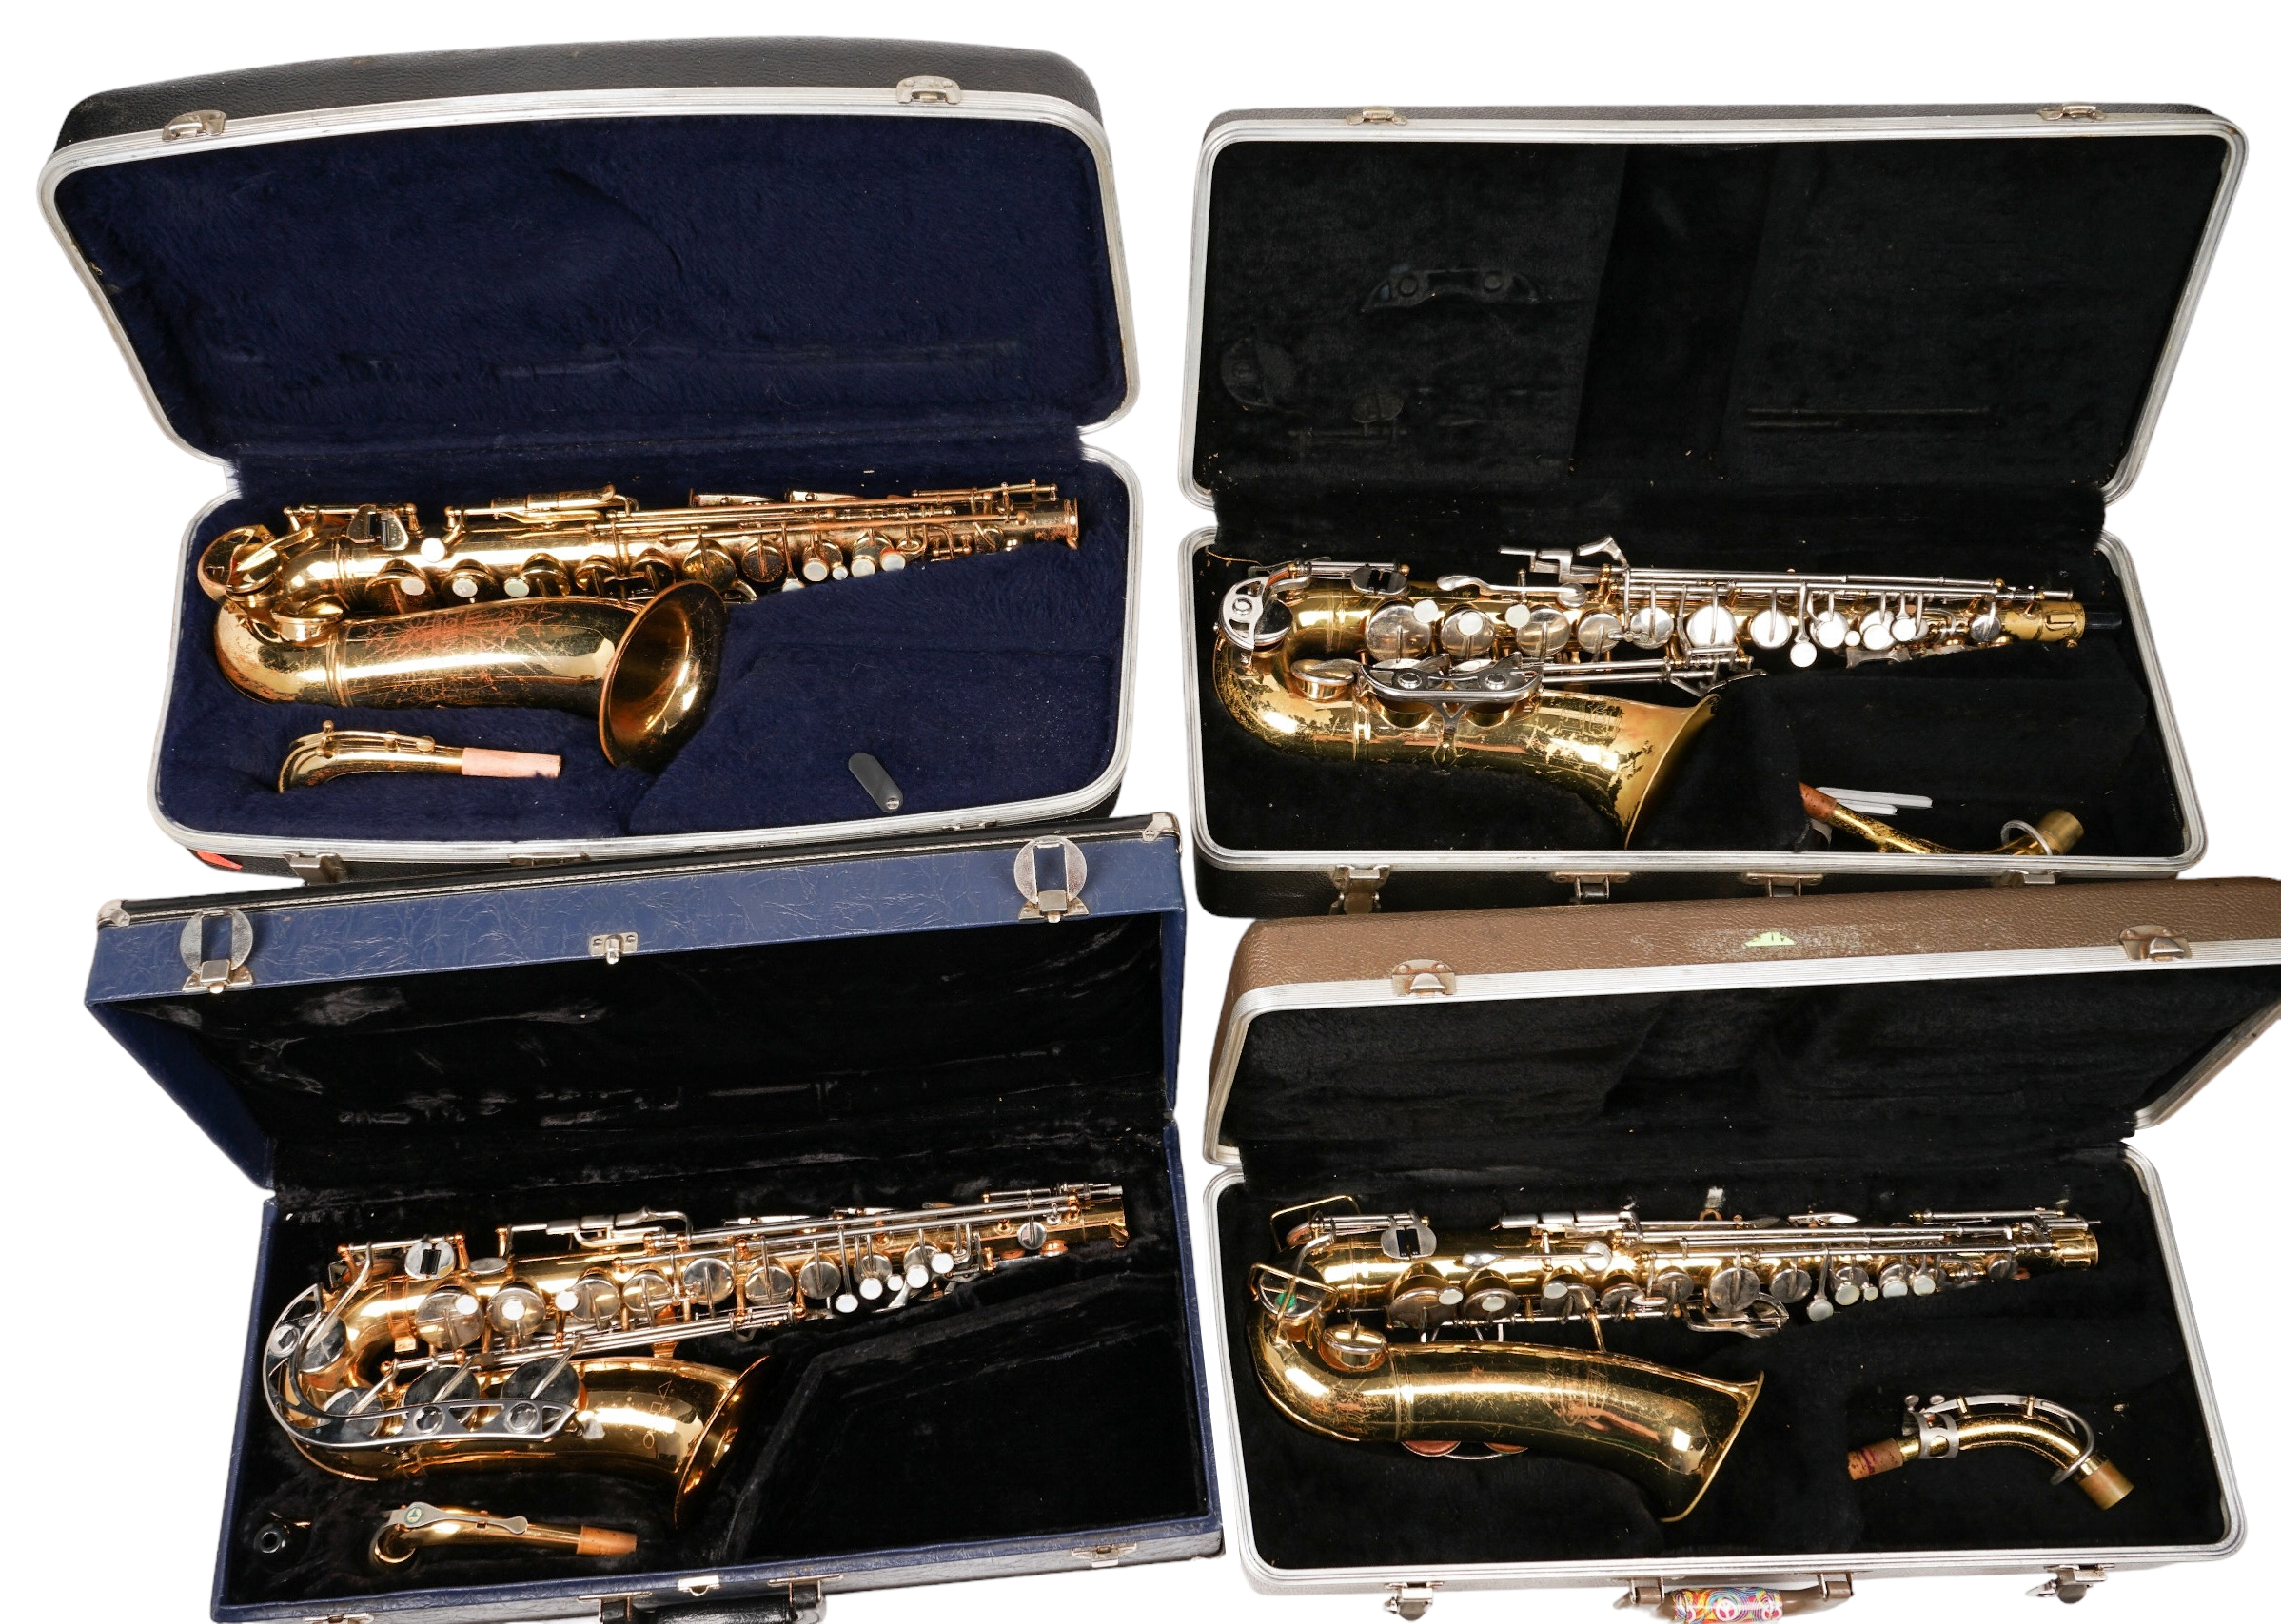  4 Alto saxophones c o Bundy 2e2297